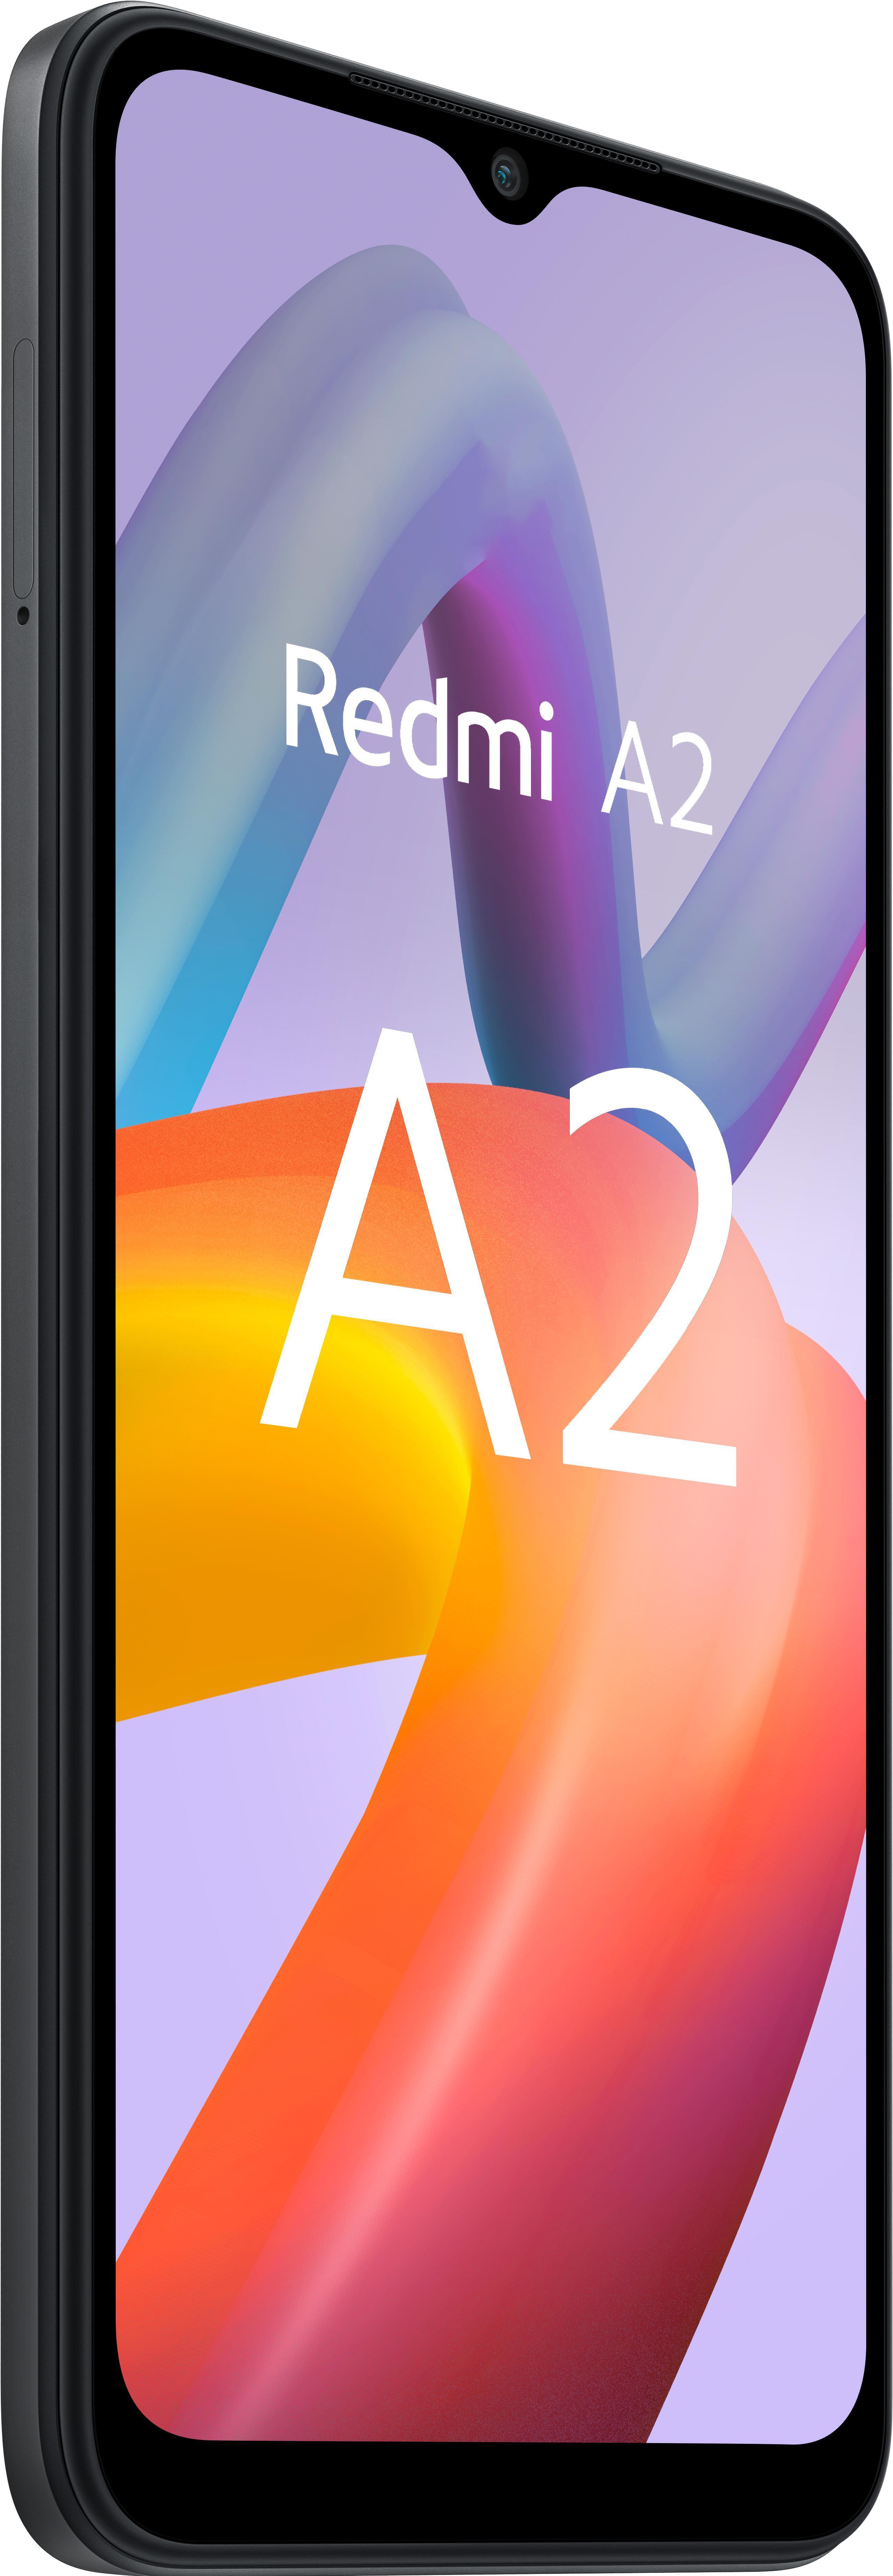 Xiaomi - Smartphone Xiaomi Redmi A2 6.52? 3GB 64GB Dual SIM Black